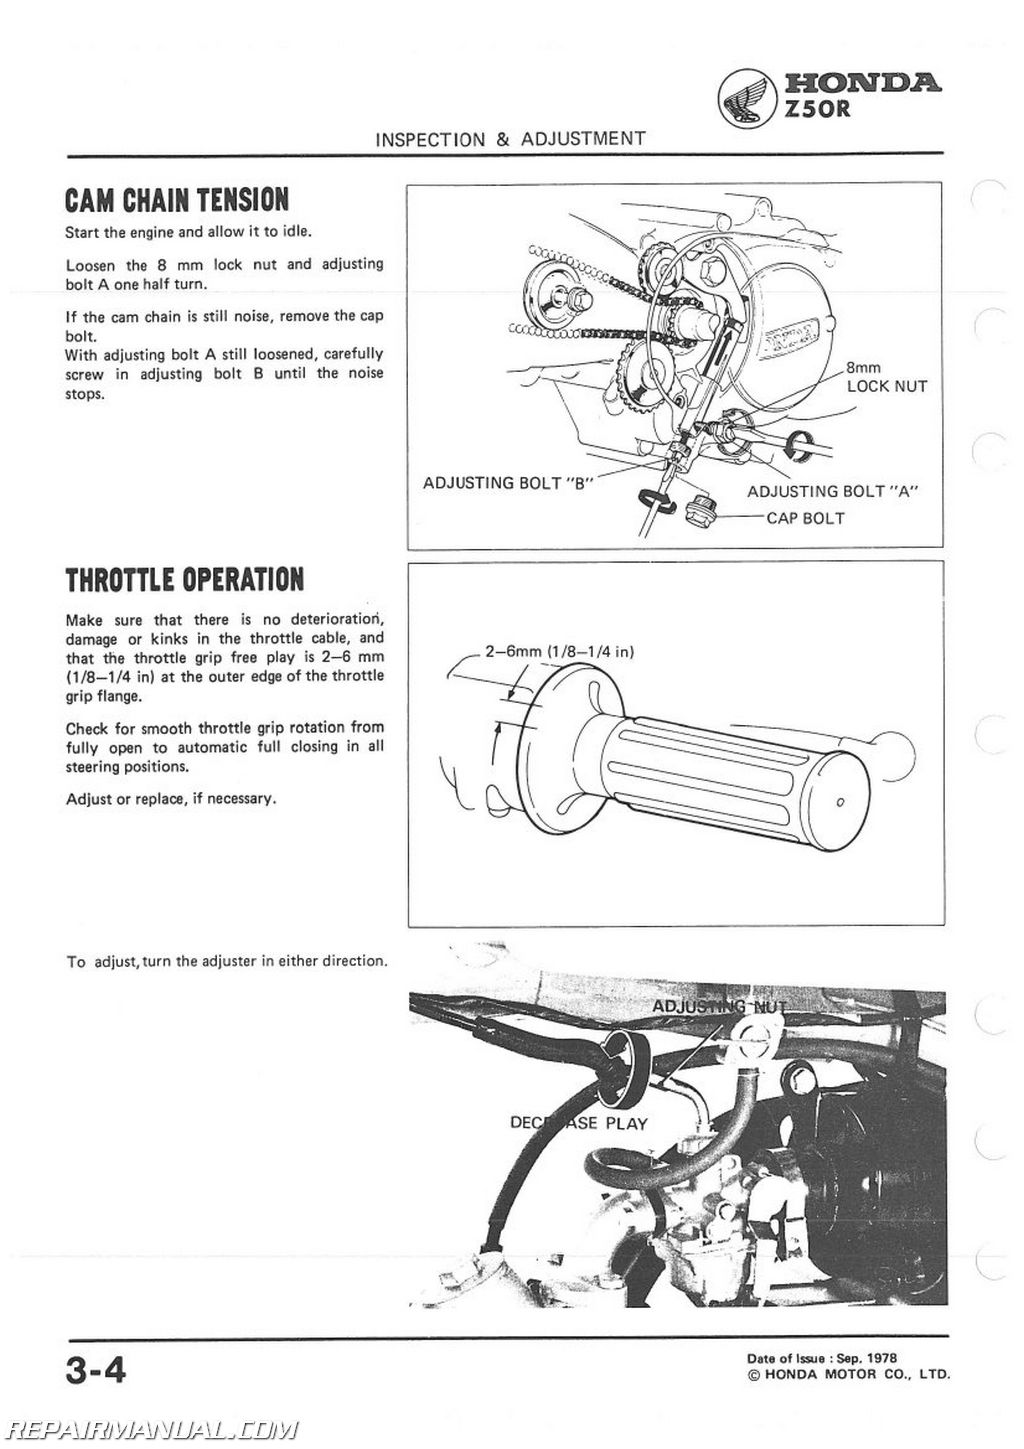 Honda z50r service manual #2